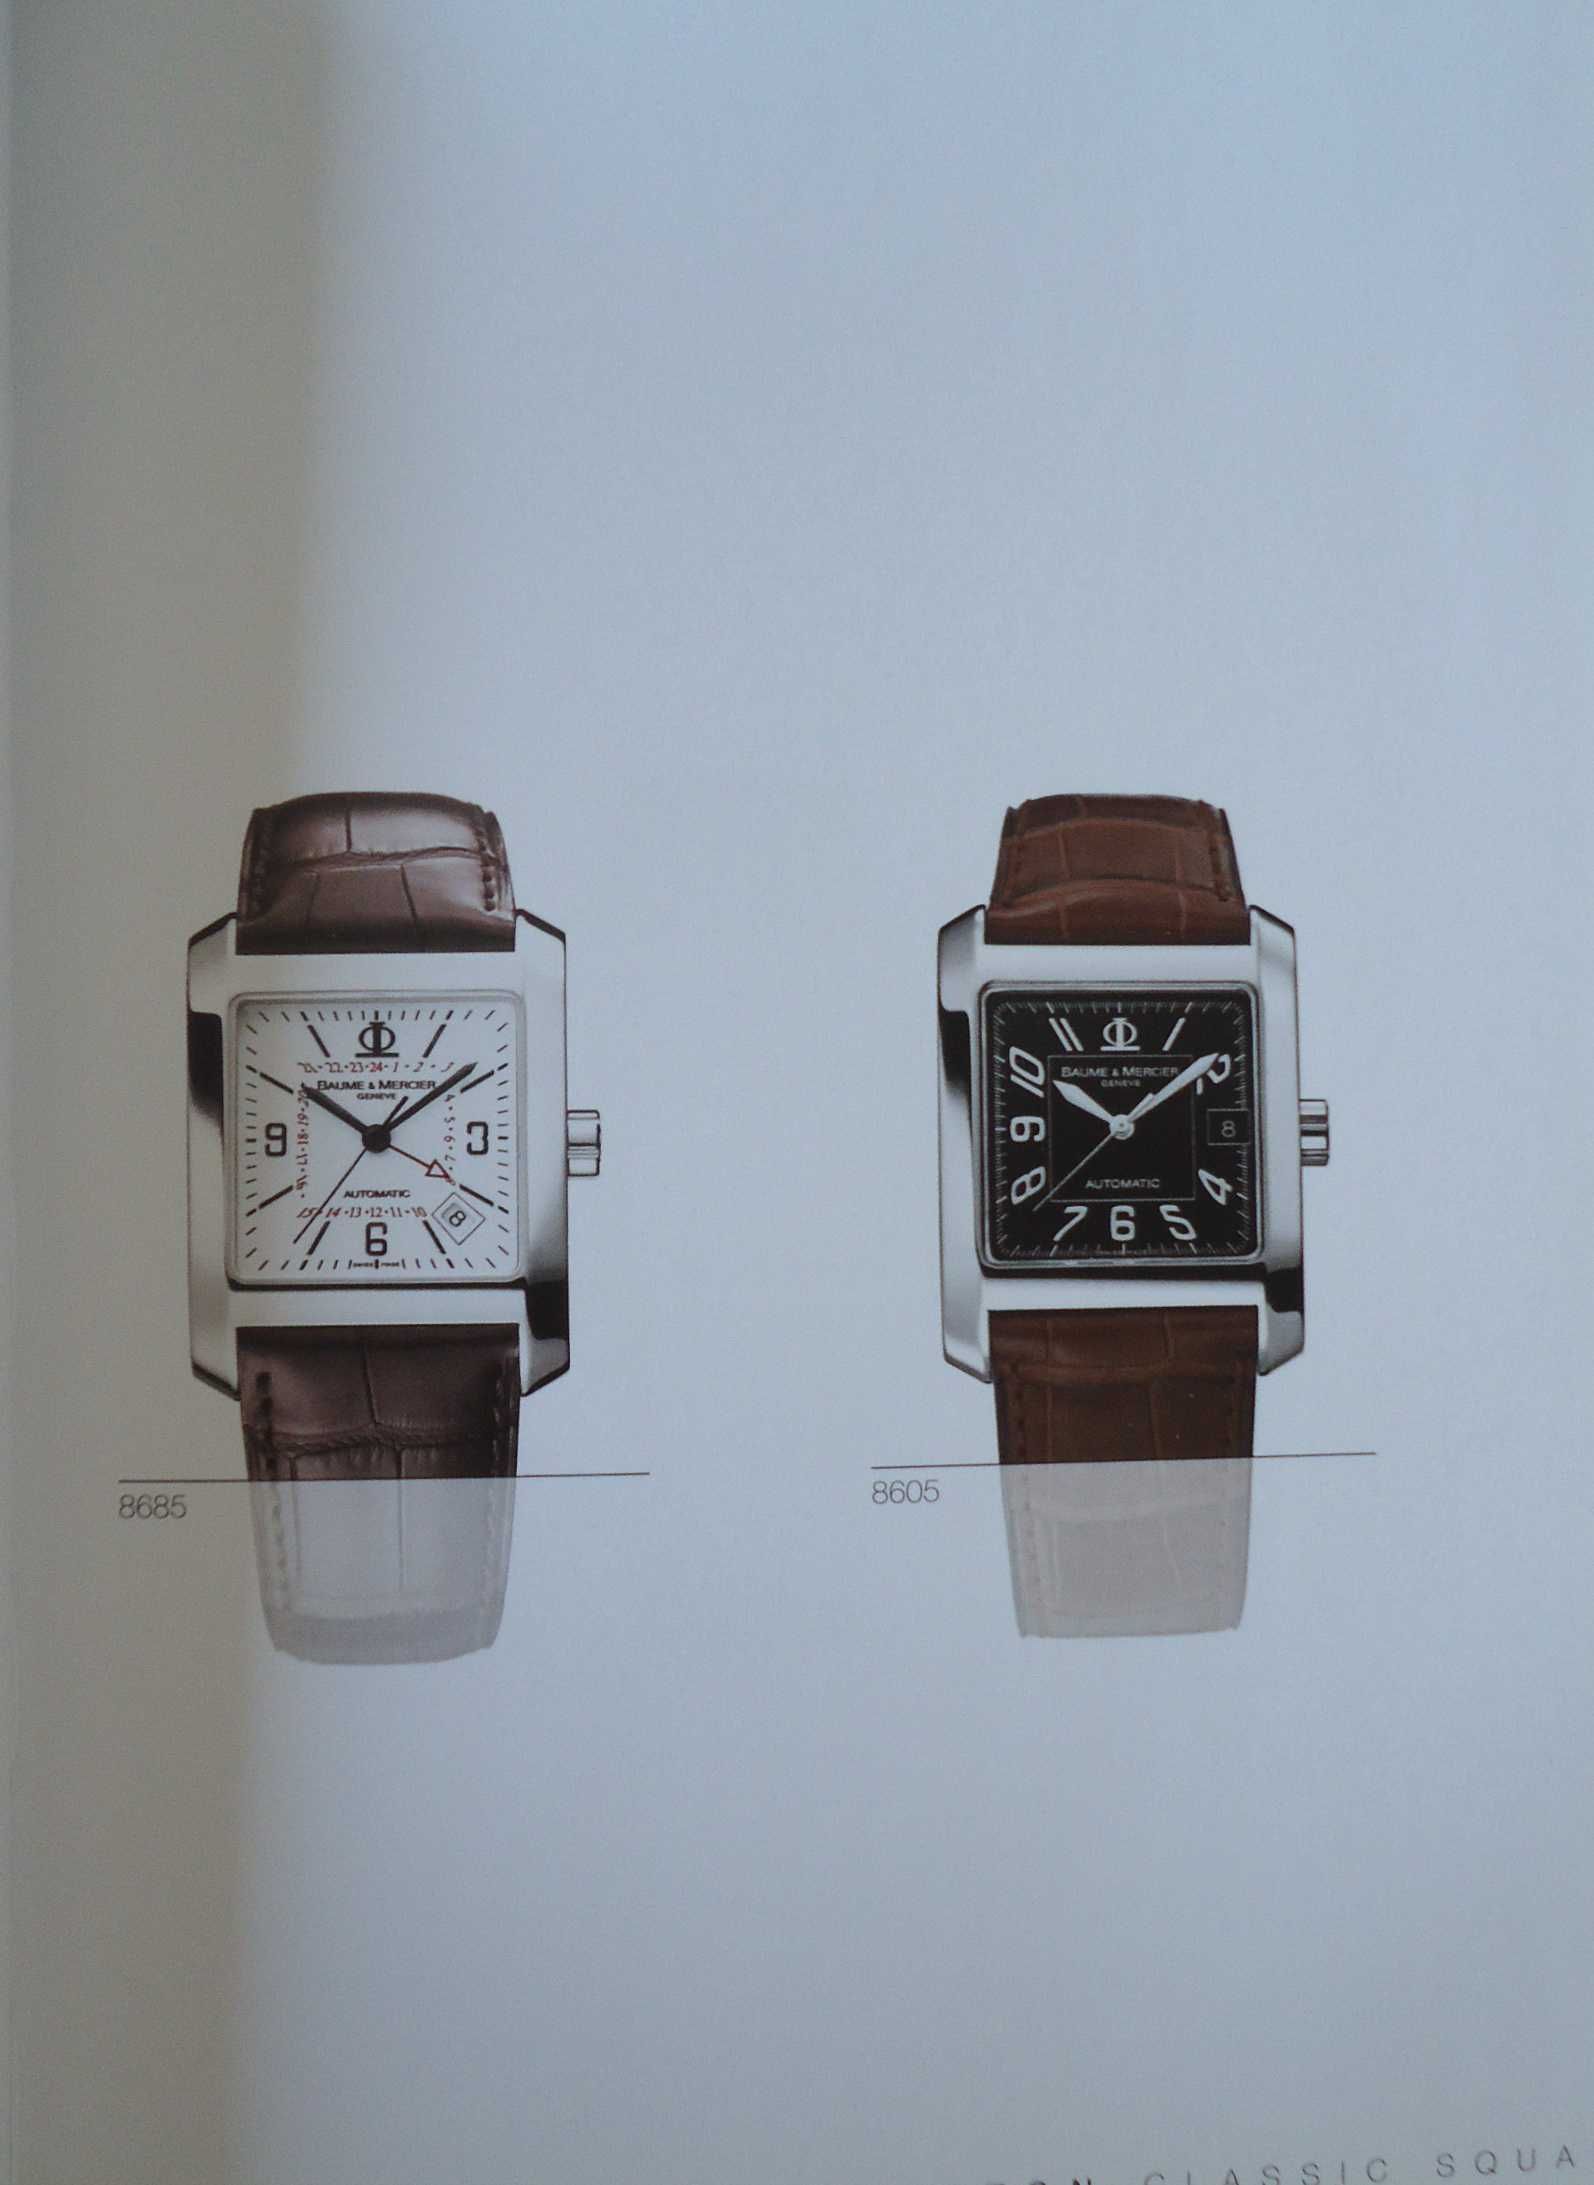 Catálogo relógios Baume & Mercier de 2006 em espanhol